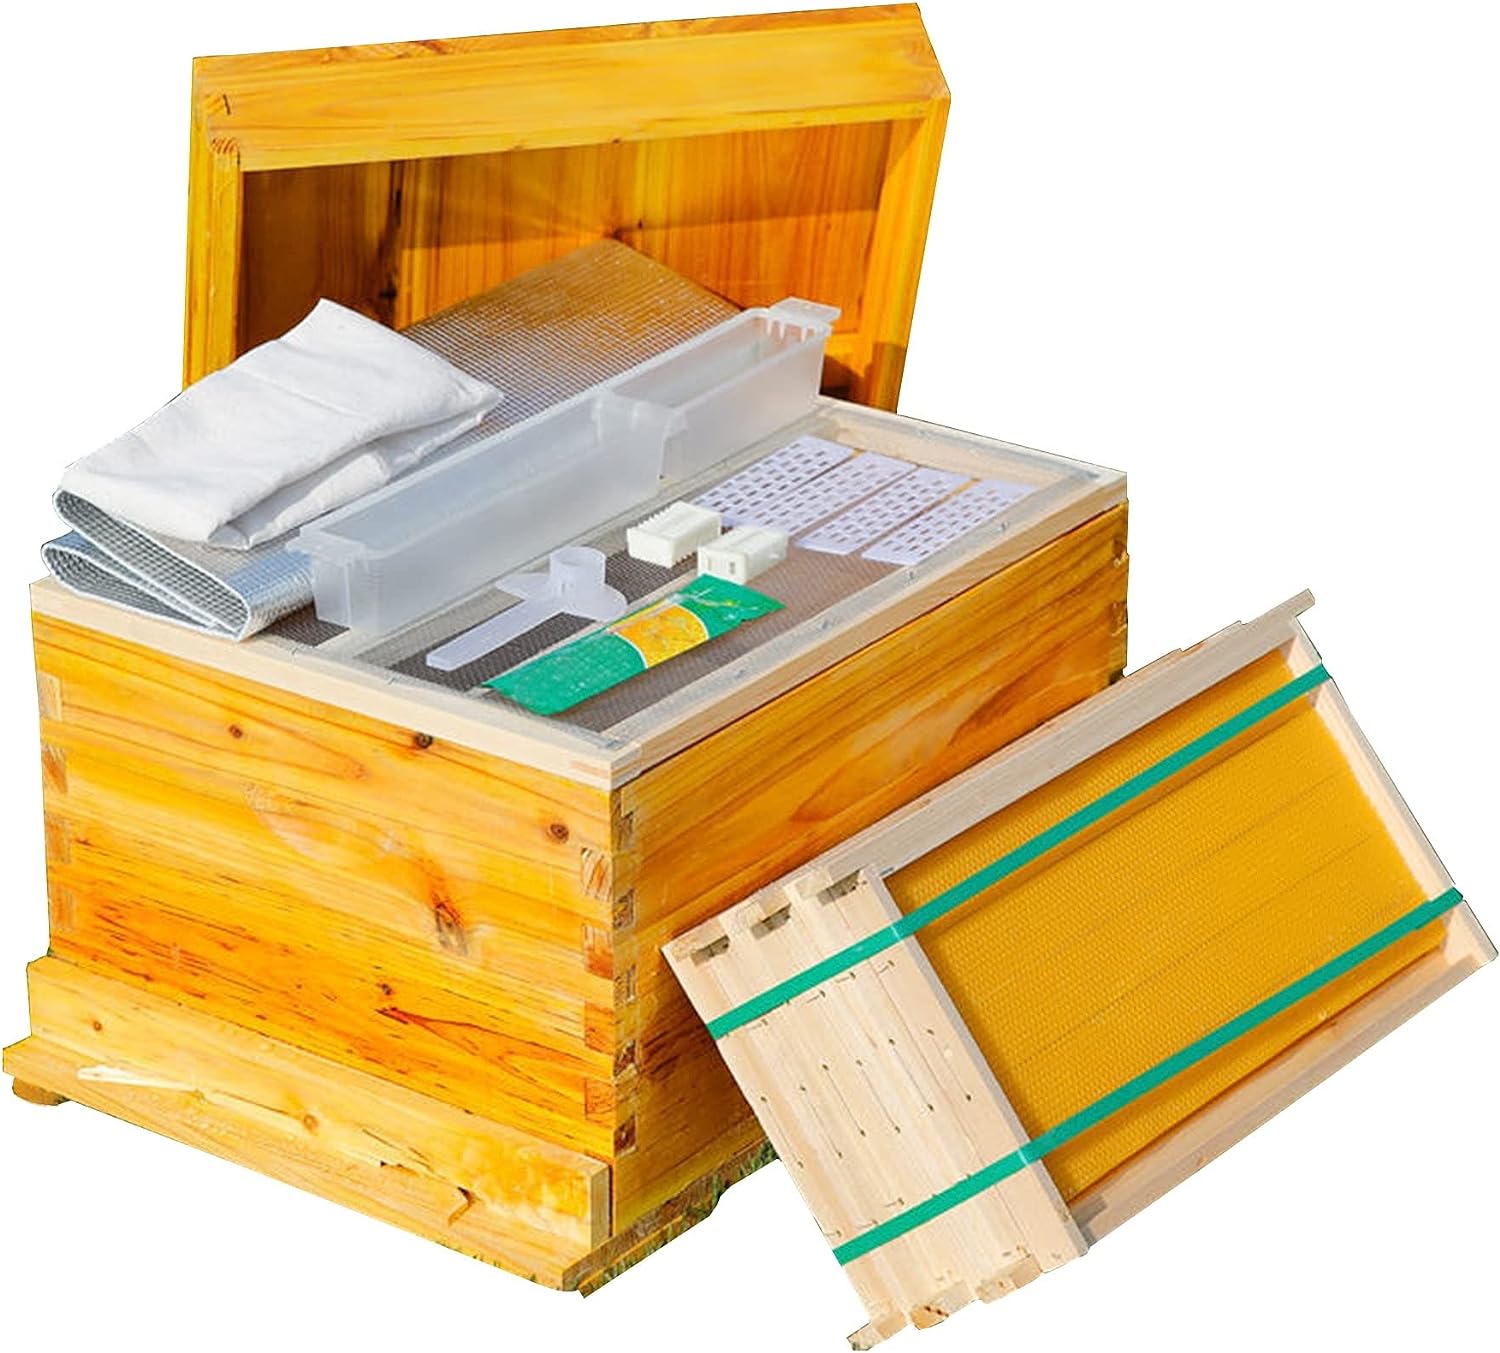 ミツバチ 巣箱 養蜂 巣箱 キットミツバチの巣箱 蜂蜜箱 10フレーム 蜜蜂巣箱養蜂箱 養蜂ツール 巣箱 蜂の巣 蜂かご 道具 蜂 巣箱 養蜂器具  ミツバチ 巣箱木製の